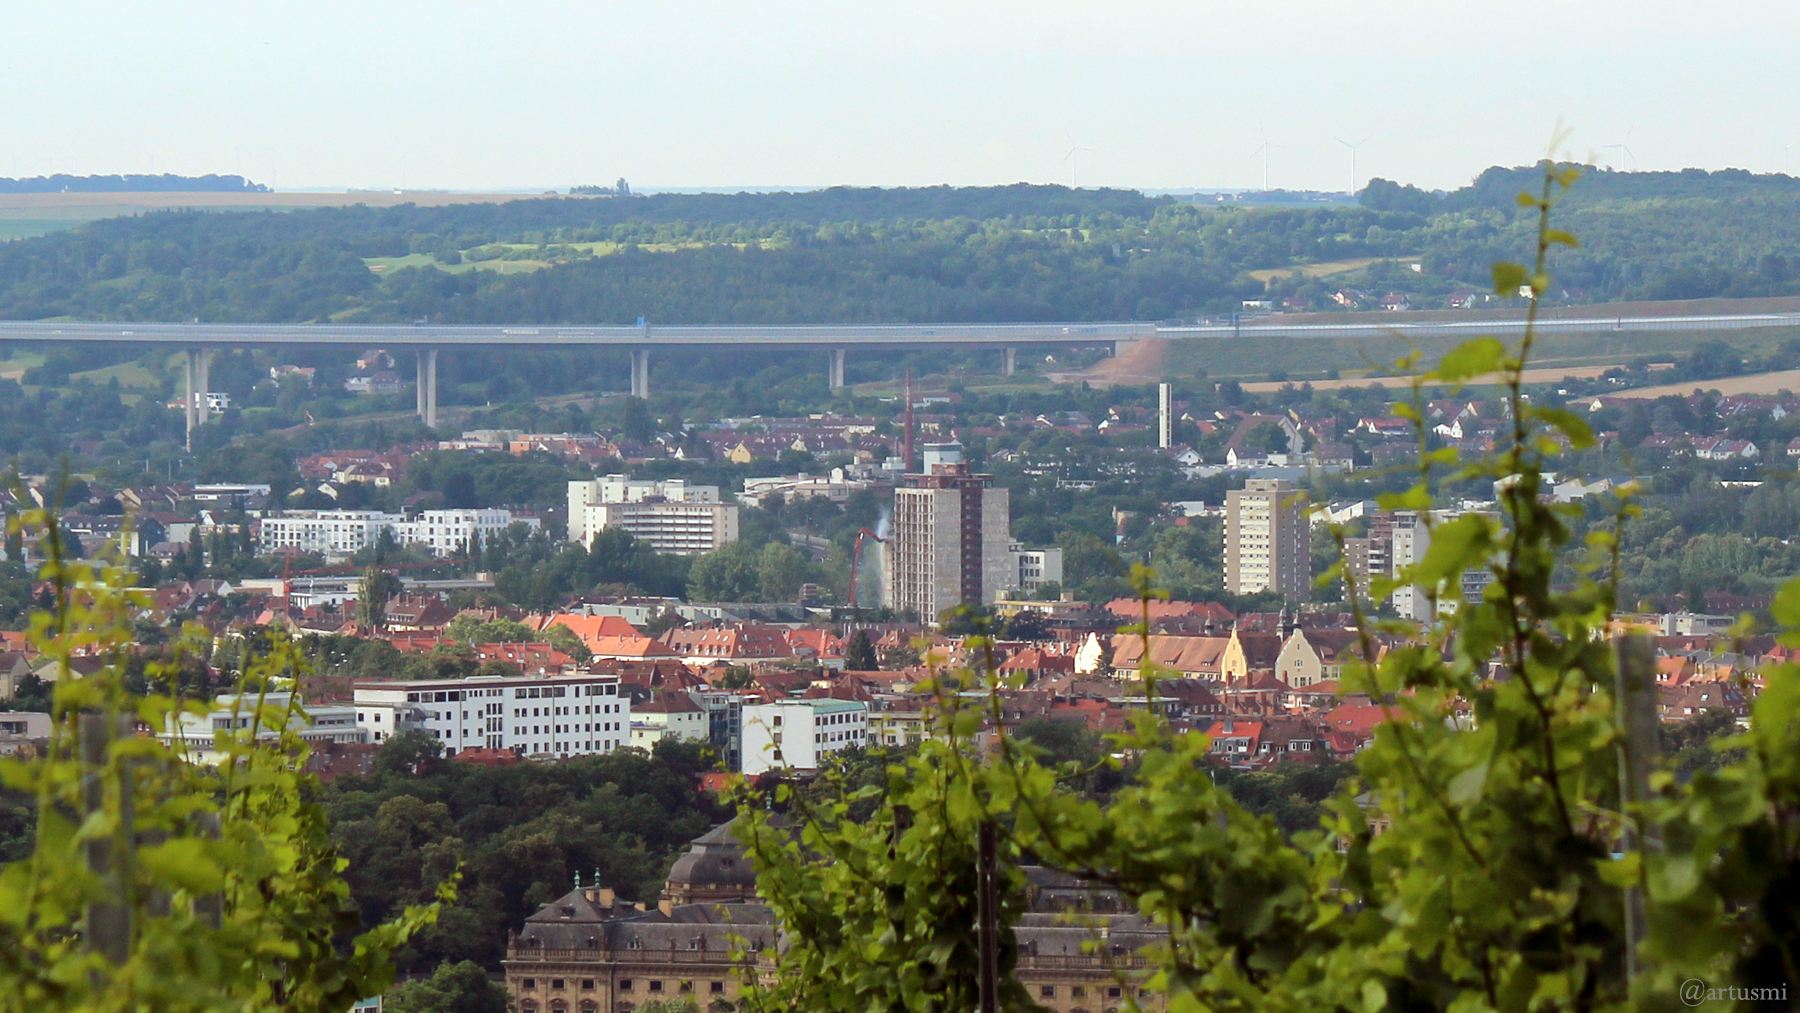 Stadtteil Sanderau in Würzburg mit Teilansicht der Autobahnbrücke der A3 und Abrissbagger am Bürgerspital-Hochhaus (Bildmitte)